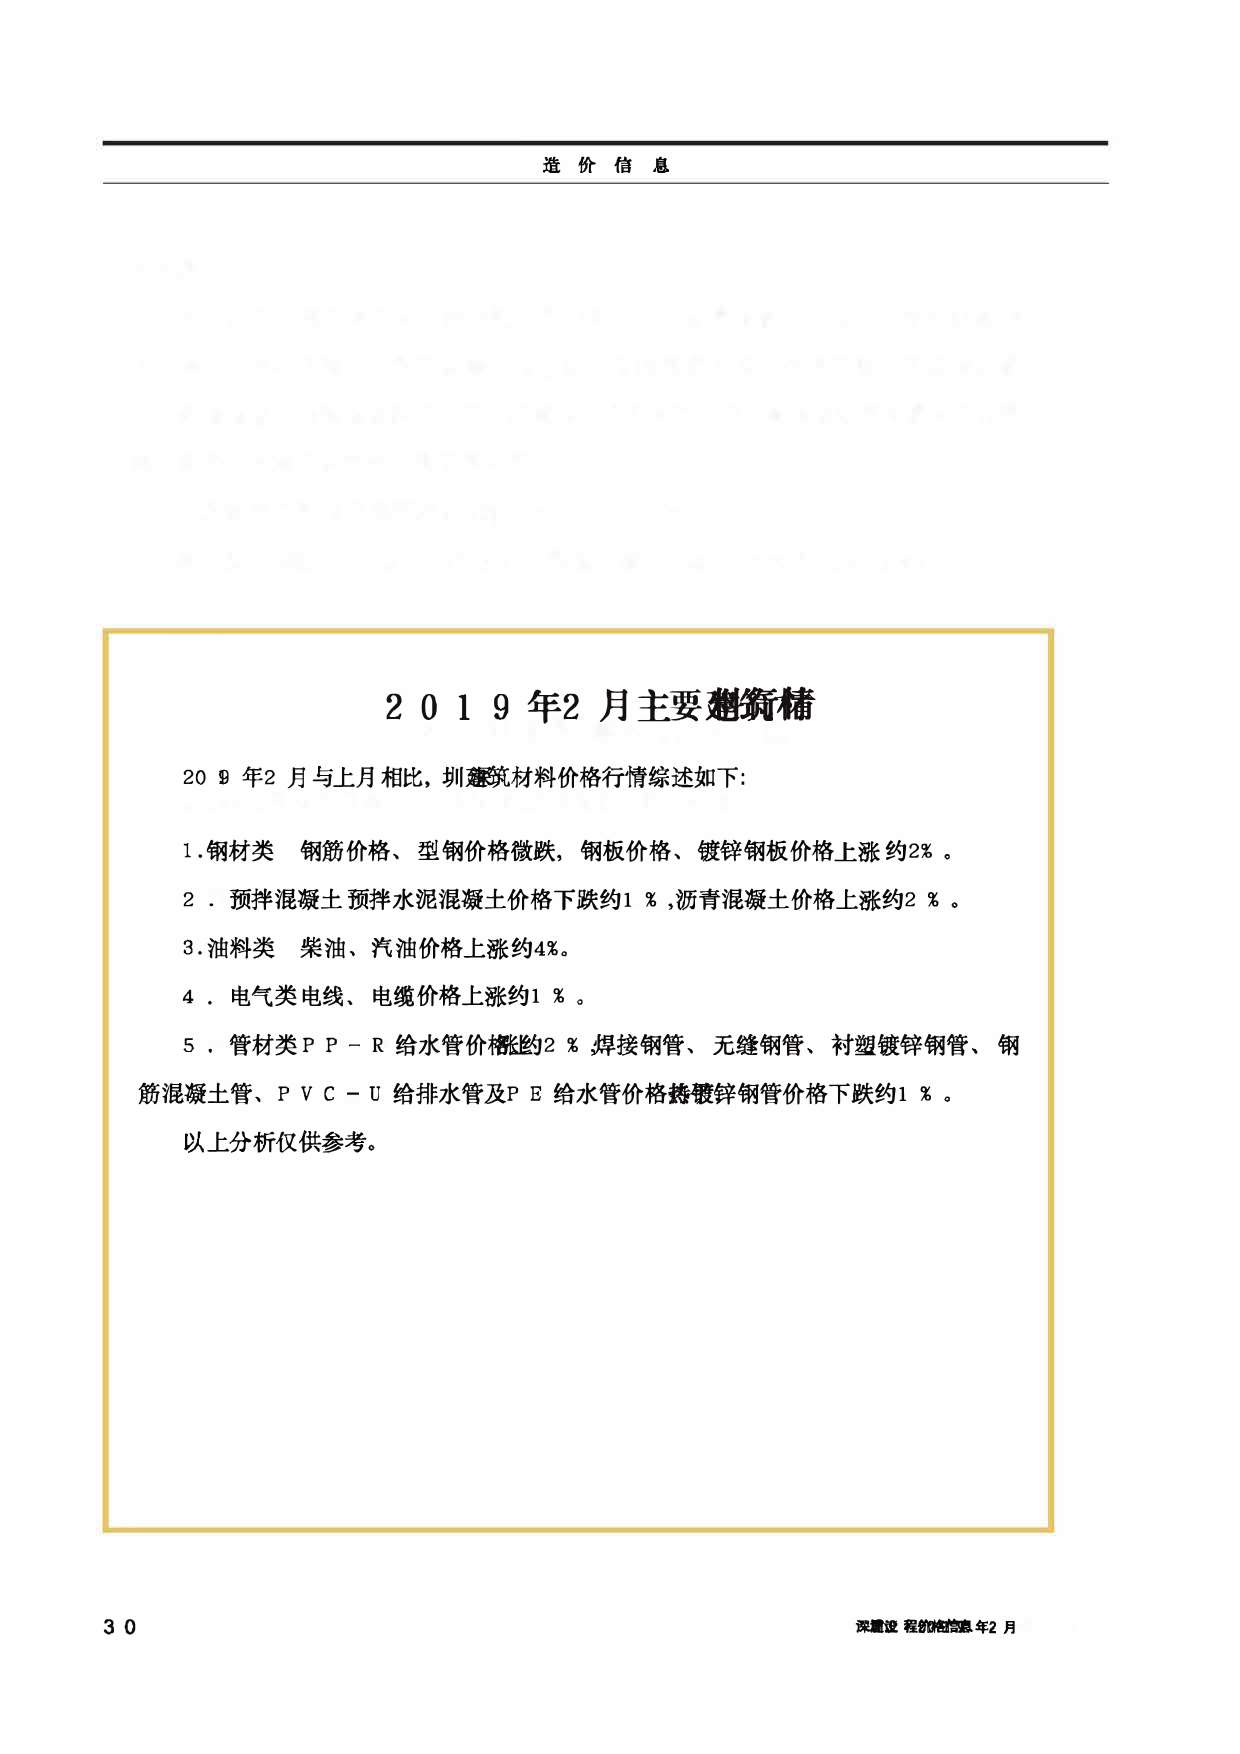 深圳市2019年2月工程信息价_深圳市信息价期刊PDF扫描件电子版